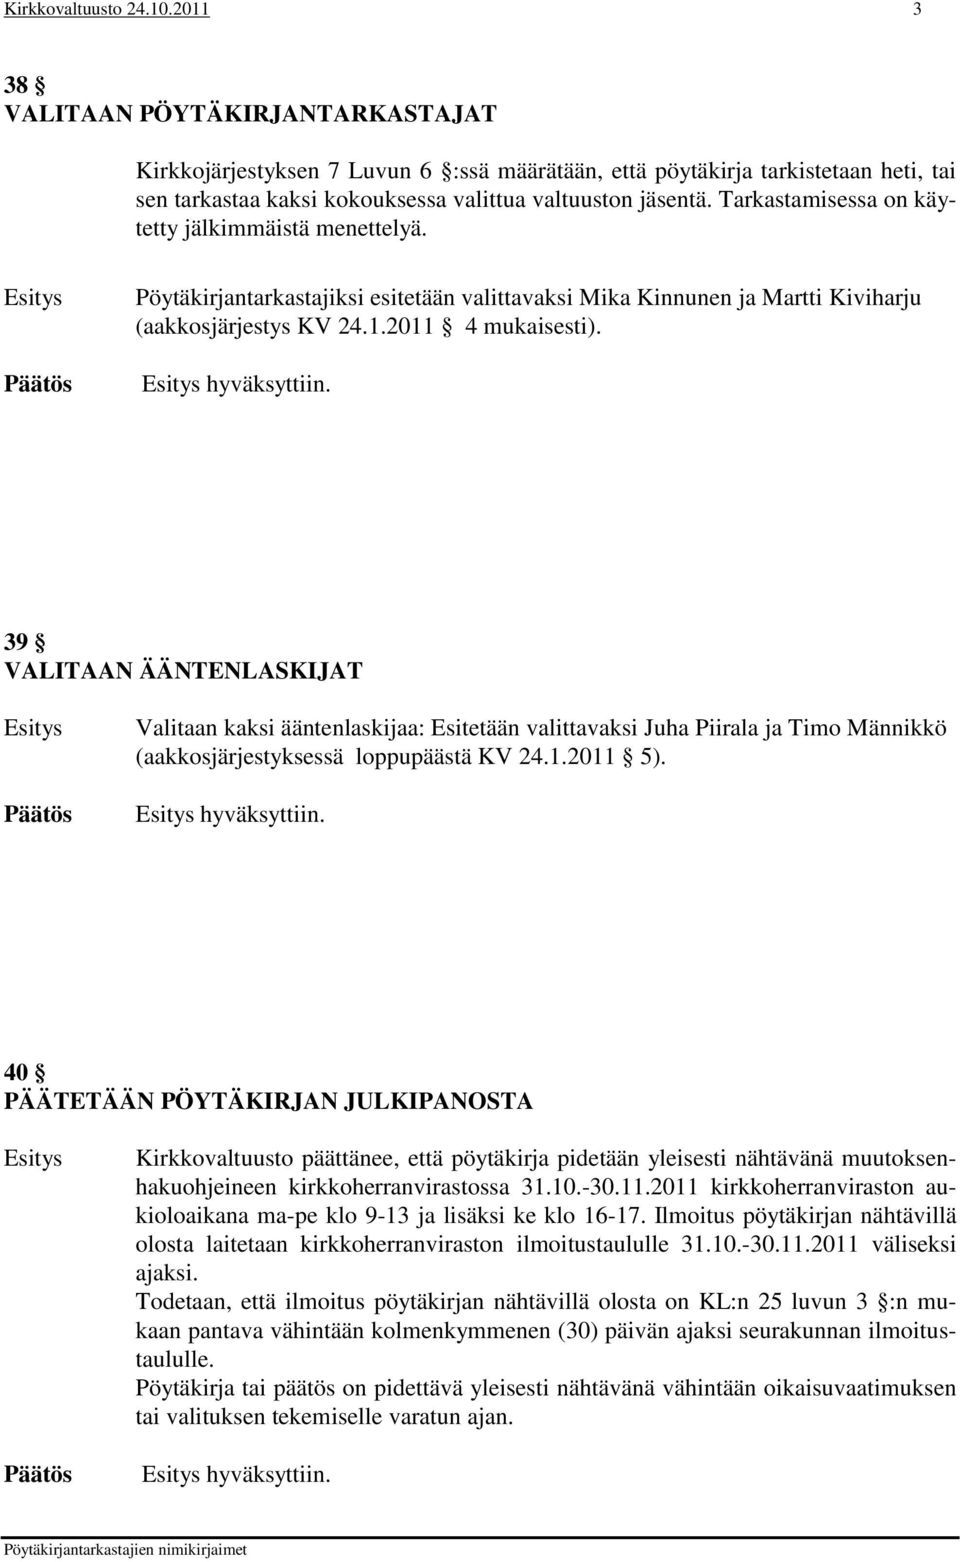 Tarkastamisessa on käytetty jälkimmäistä menettelyä. Pöytäkirjantarkastajiksi esitetään valittavaksi Mika Kinnunen ja Martti Kiviharju (aakkosjärjestys KV 24.1.2011 4 mukaisesti). hyväksyttiin.